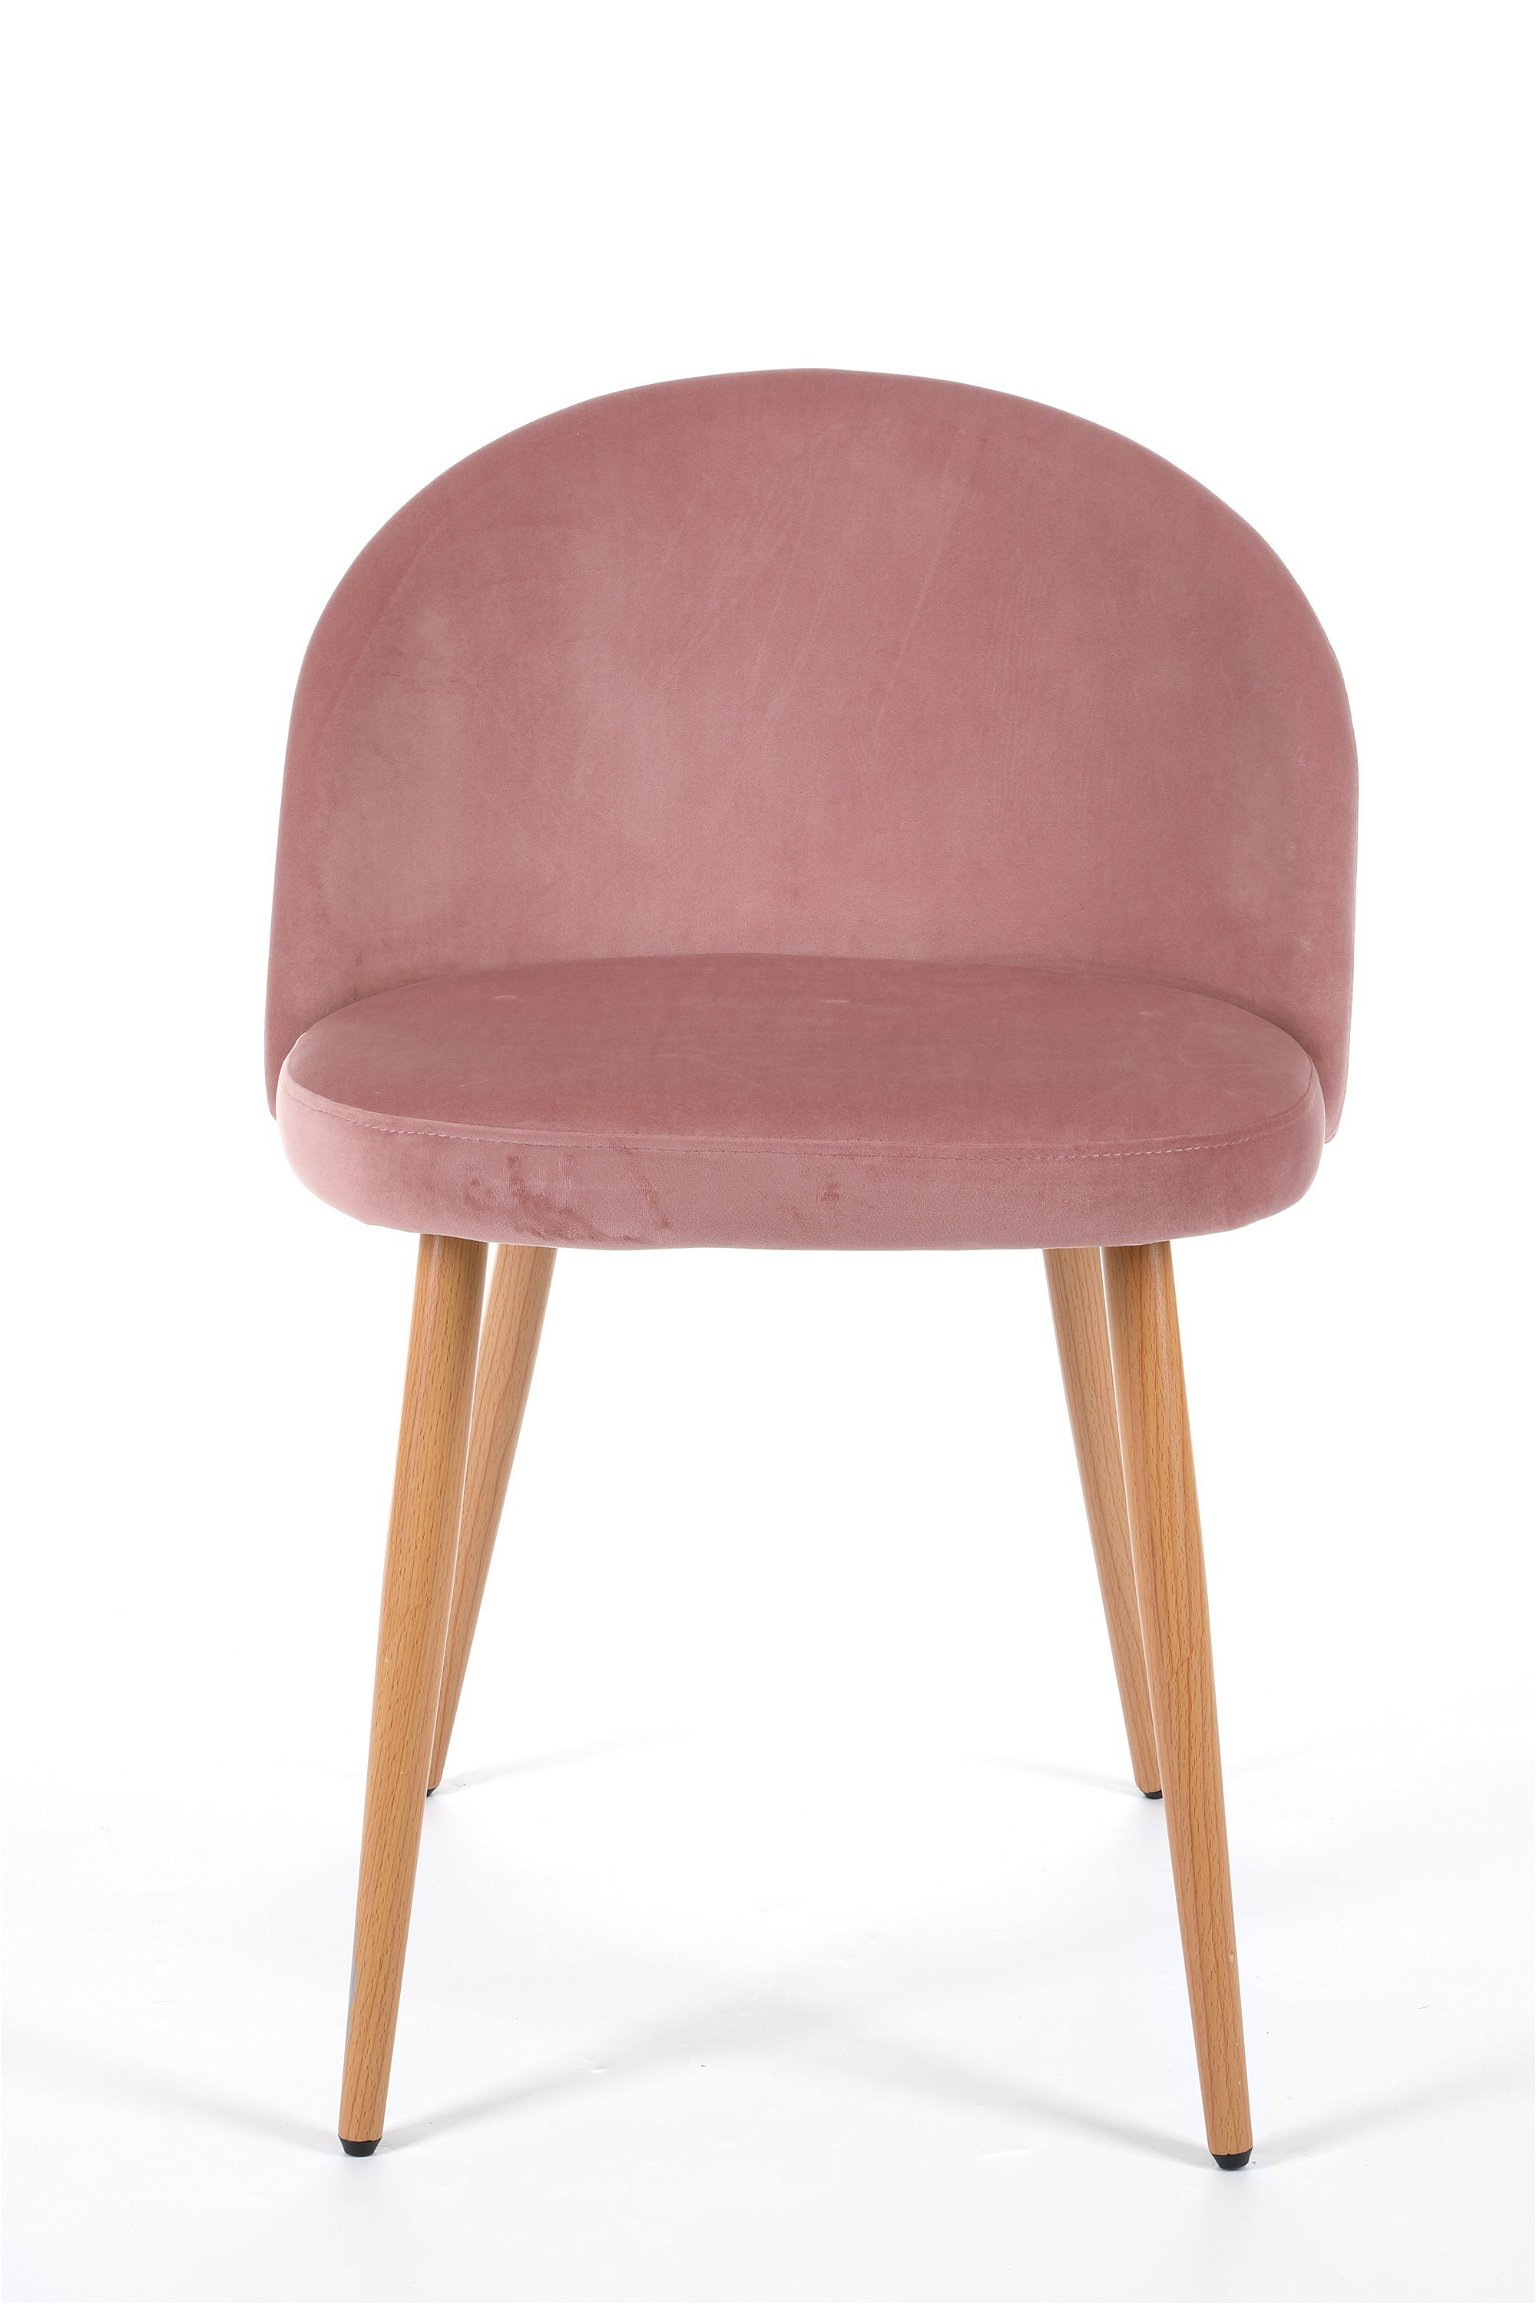 4-rių kėdžių komplektas SJ.075, rožinis - 5